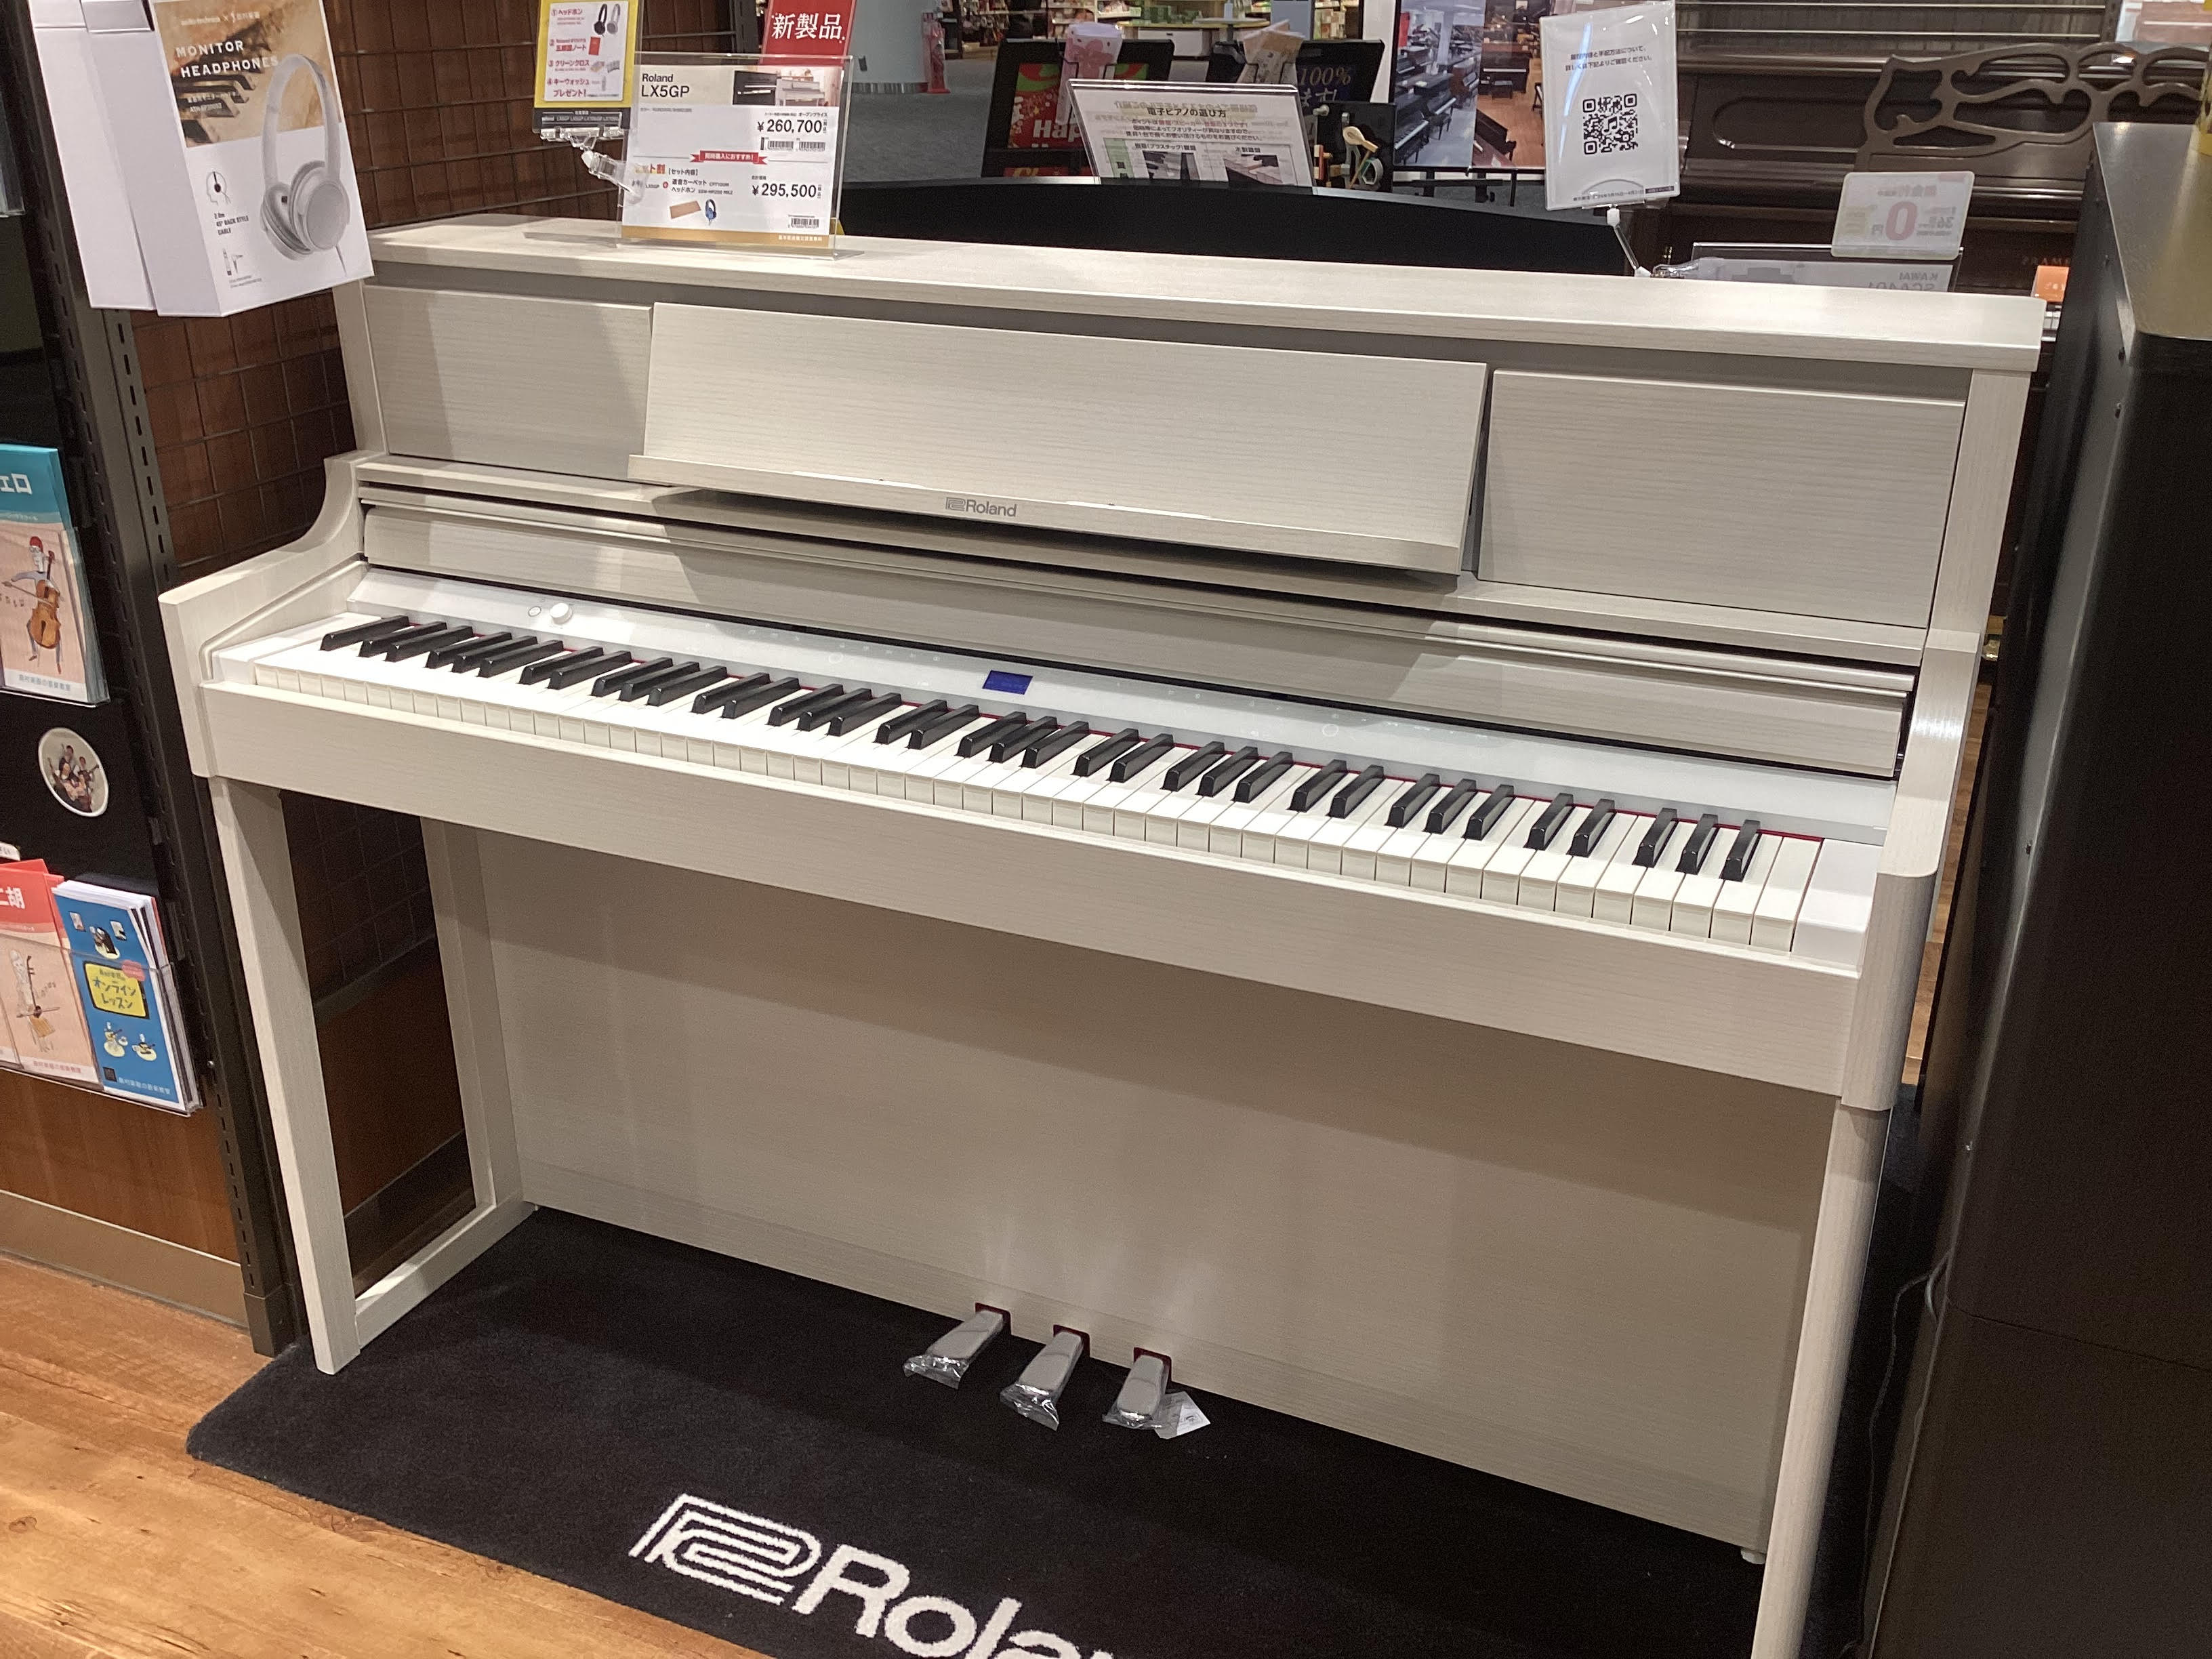 本日発売のRoland電子ピアノ新製品、「LX5GP-SR」が店頭に入荷しております。最新機種の音の響きを体感して頂けるよう、ごゆっくり試弾して頂ける環境も整っております。是非、お待ちしております。 CONTENTS店頭展示機種お問い合わせ店頭展示機種 オススメポイント！ ピアノ・リアリティ・モデリ […]